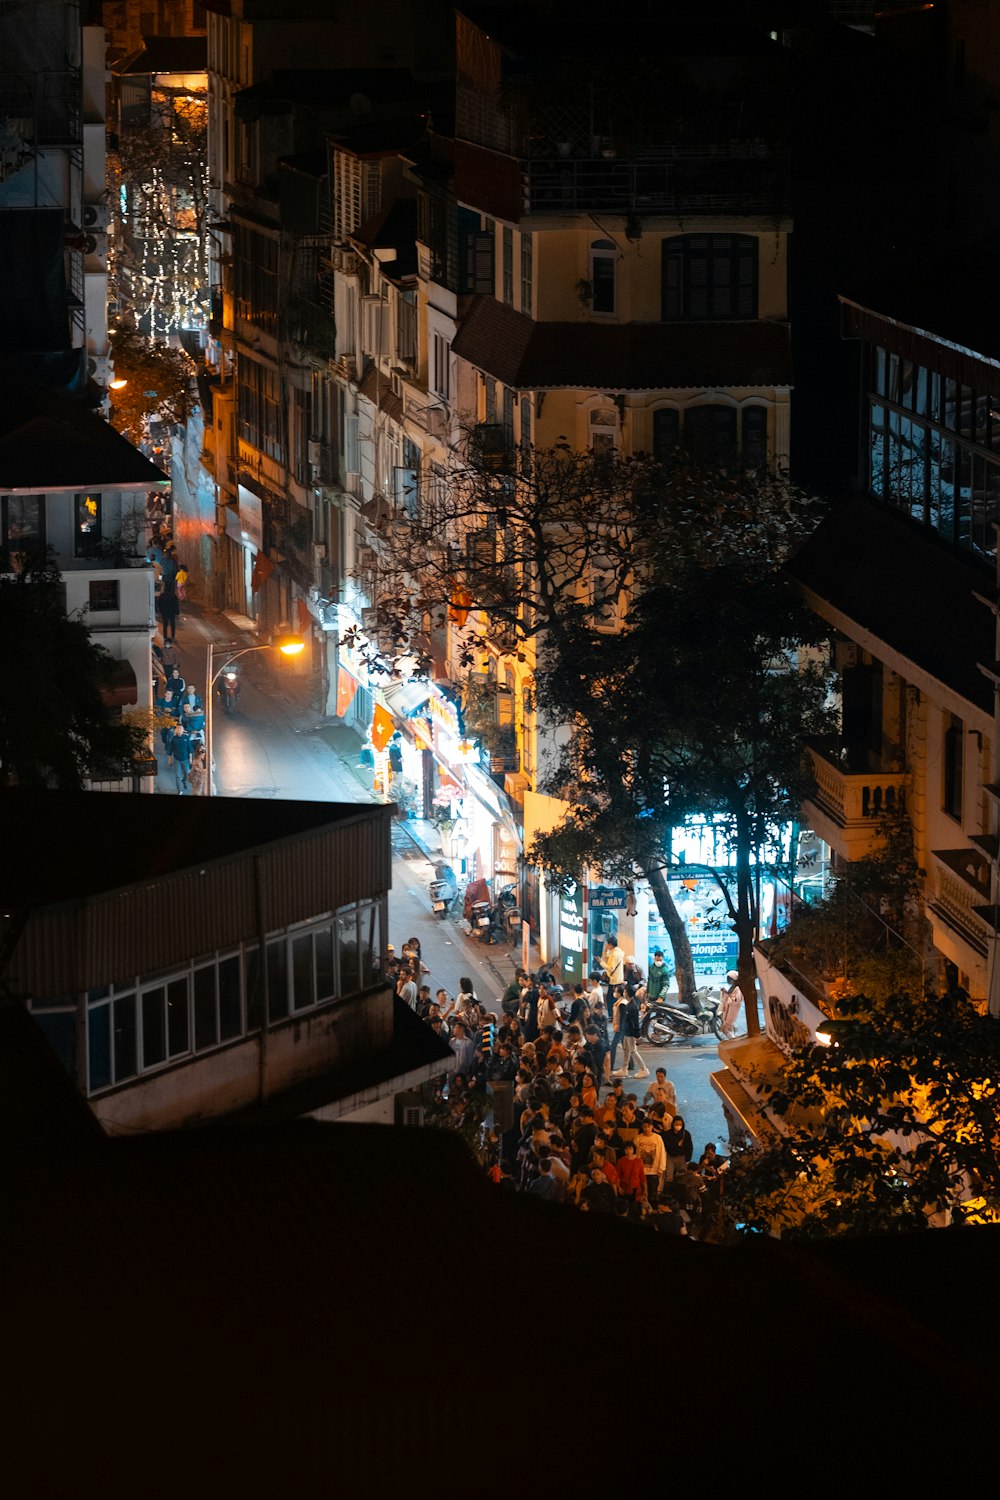 Una vista de una ciudad por la noche desde un punto de vista elevado